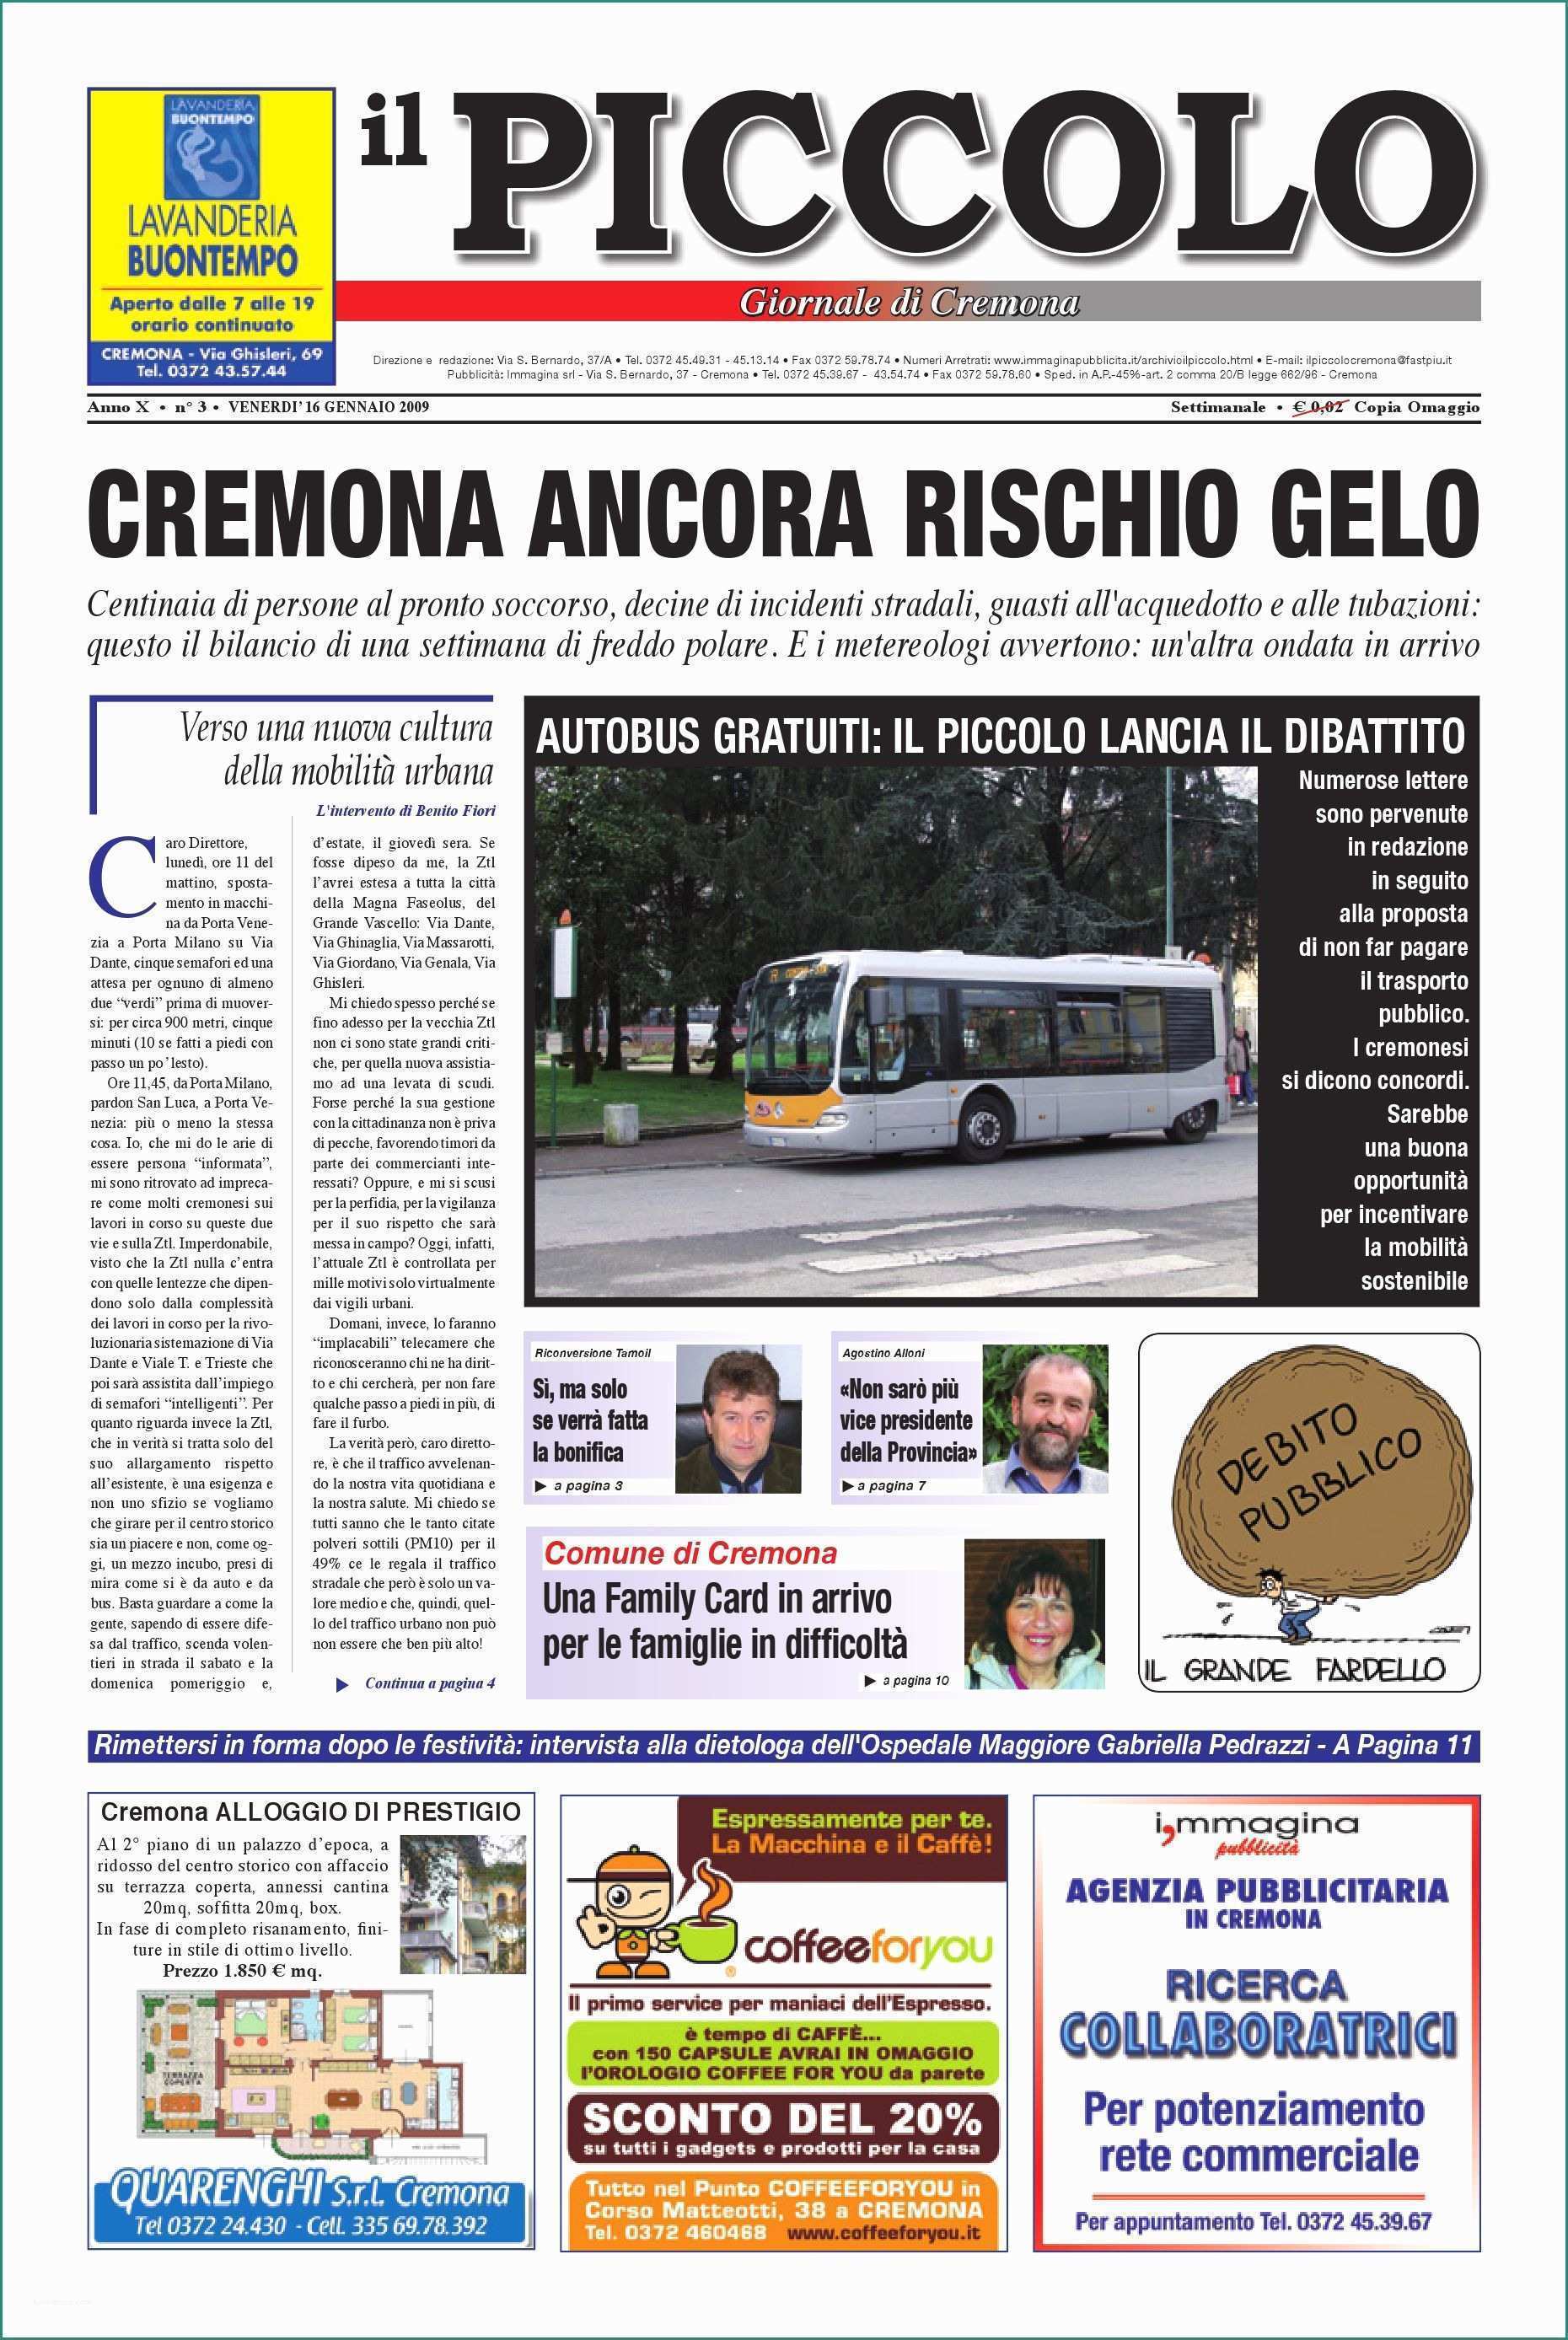 Bidoni Spazzatura Leroy Merlin E Il Piccolo Giornale by Promedia Promedia issuu